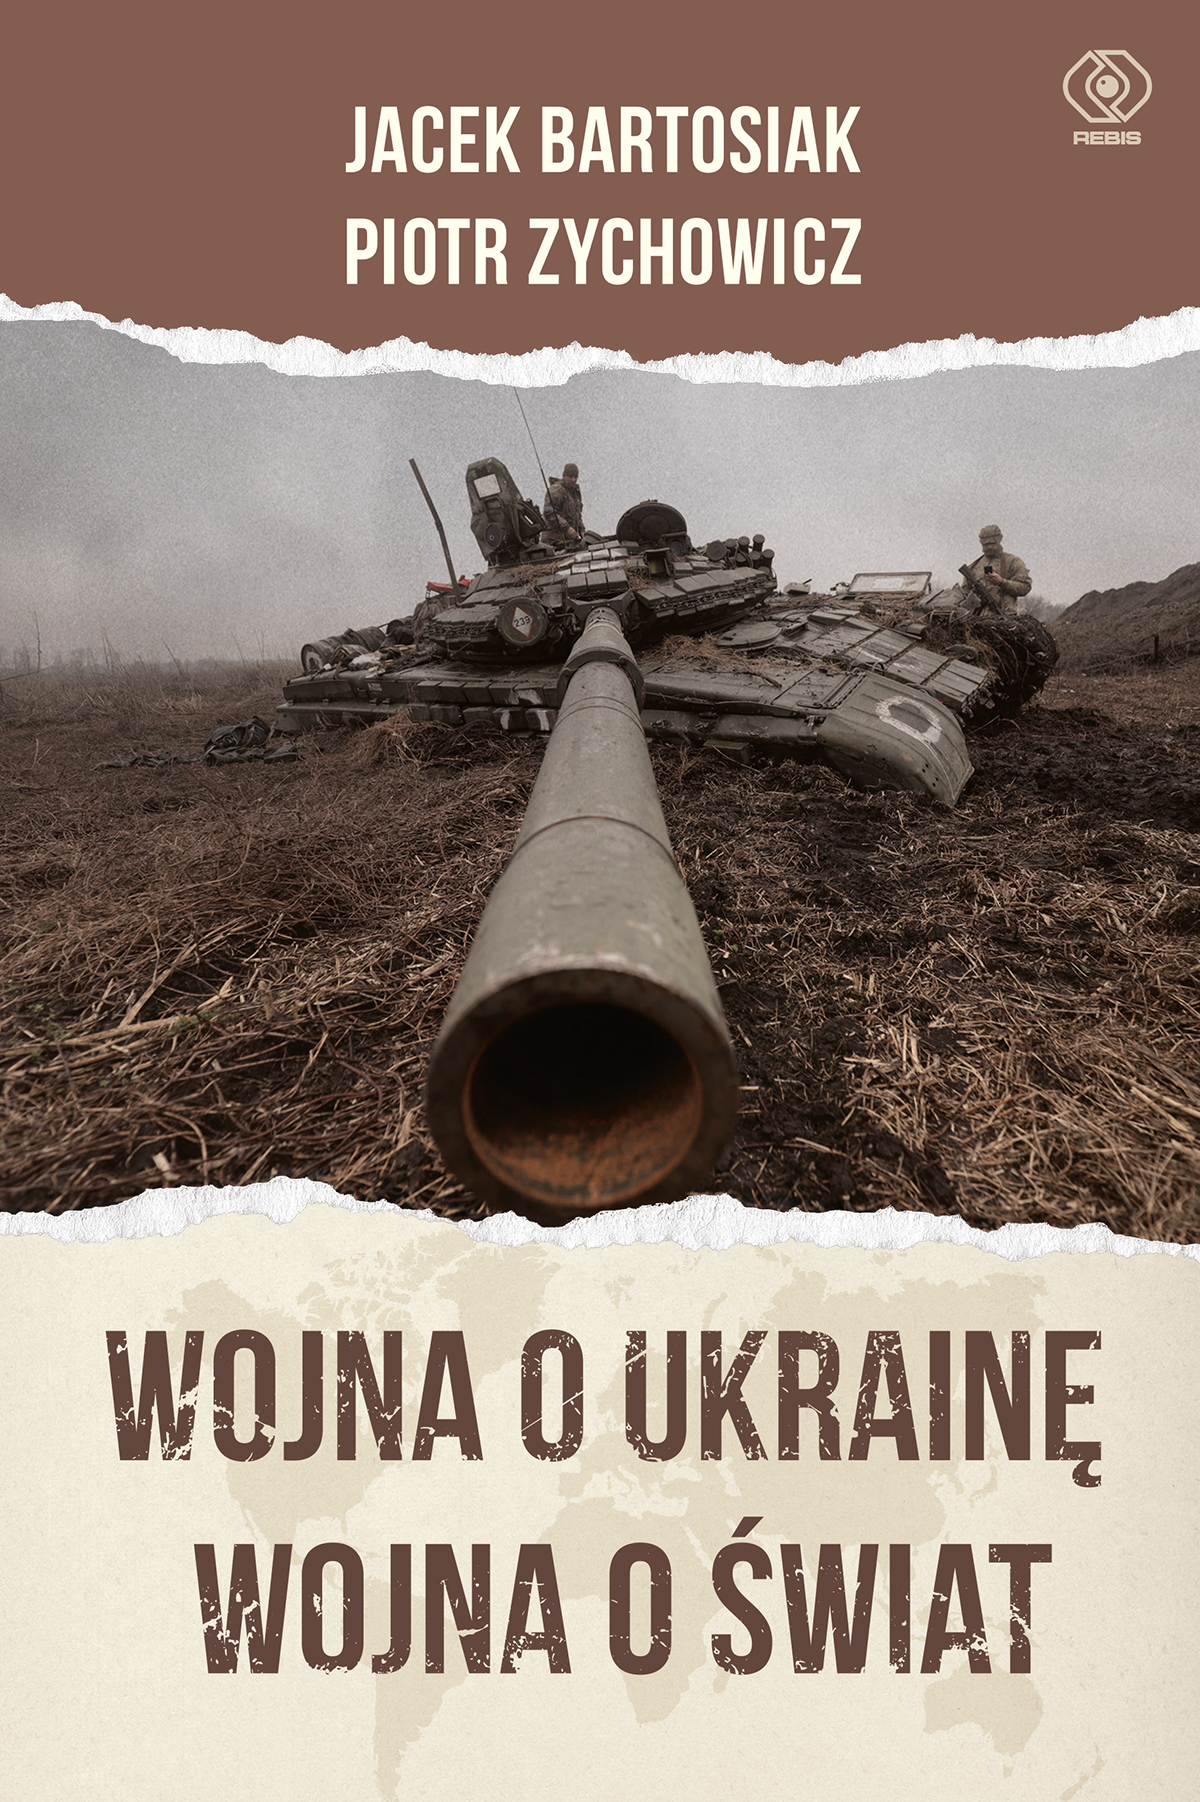 7 listopada w REBIS-ie: P. Zychowicz, J. Bartosiak - "Wojna o Ukrainę. Wojna o świat"